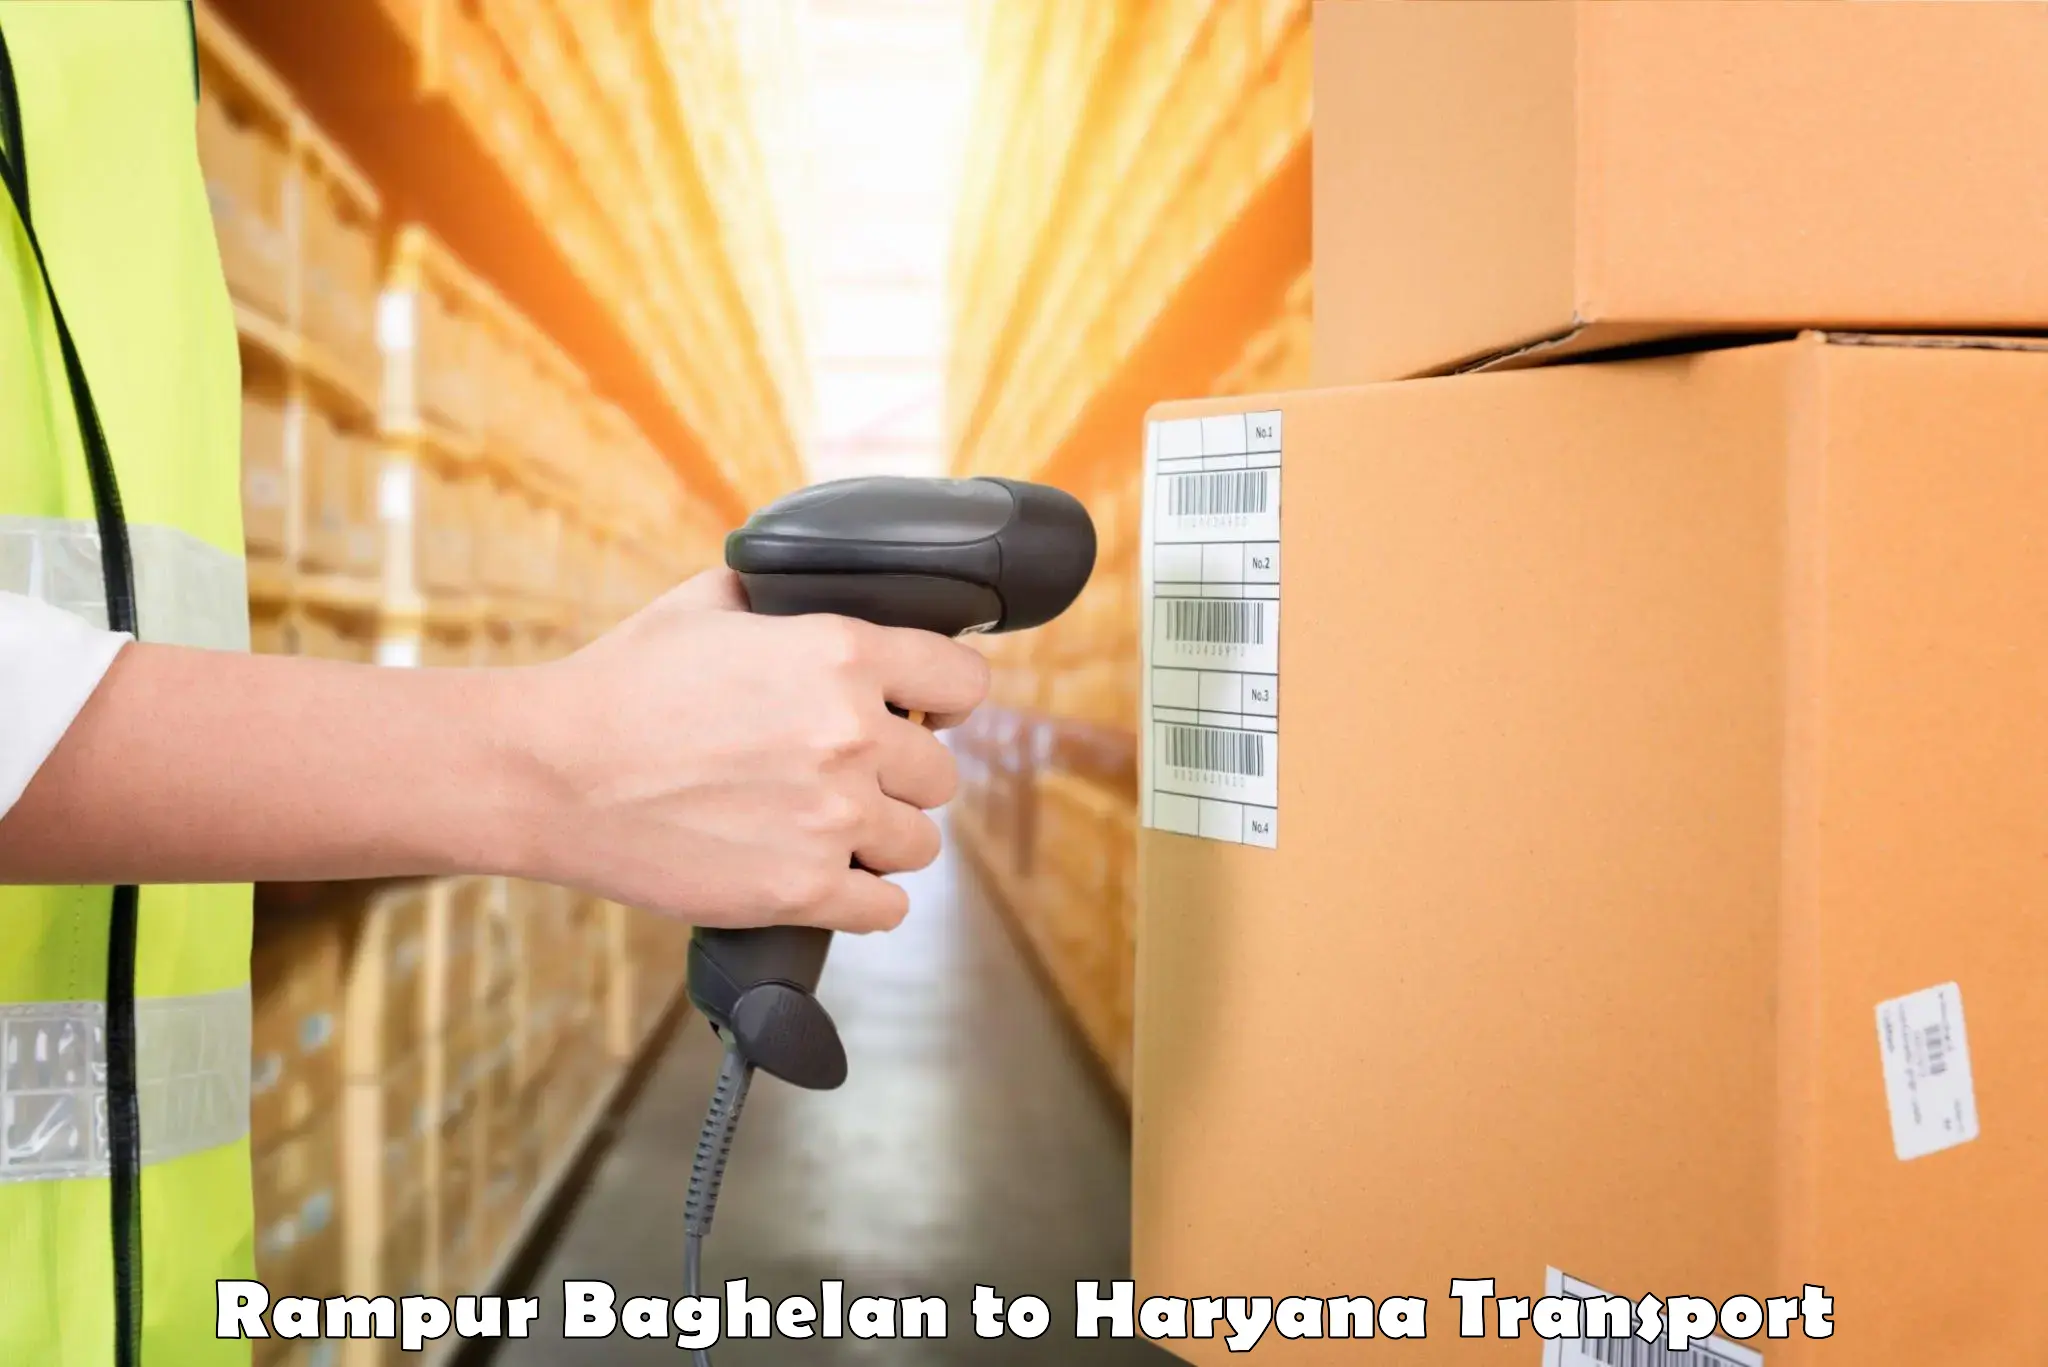 Luggage transport services in Rampur Baghelan to Jhajjar